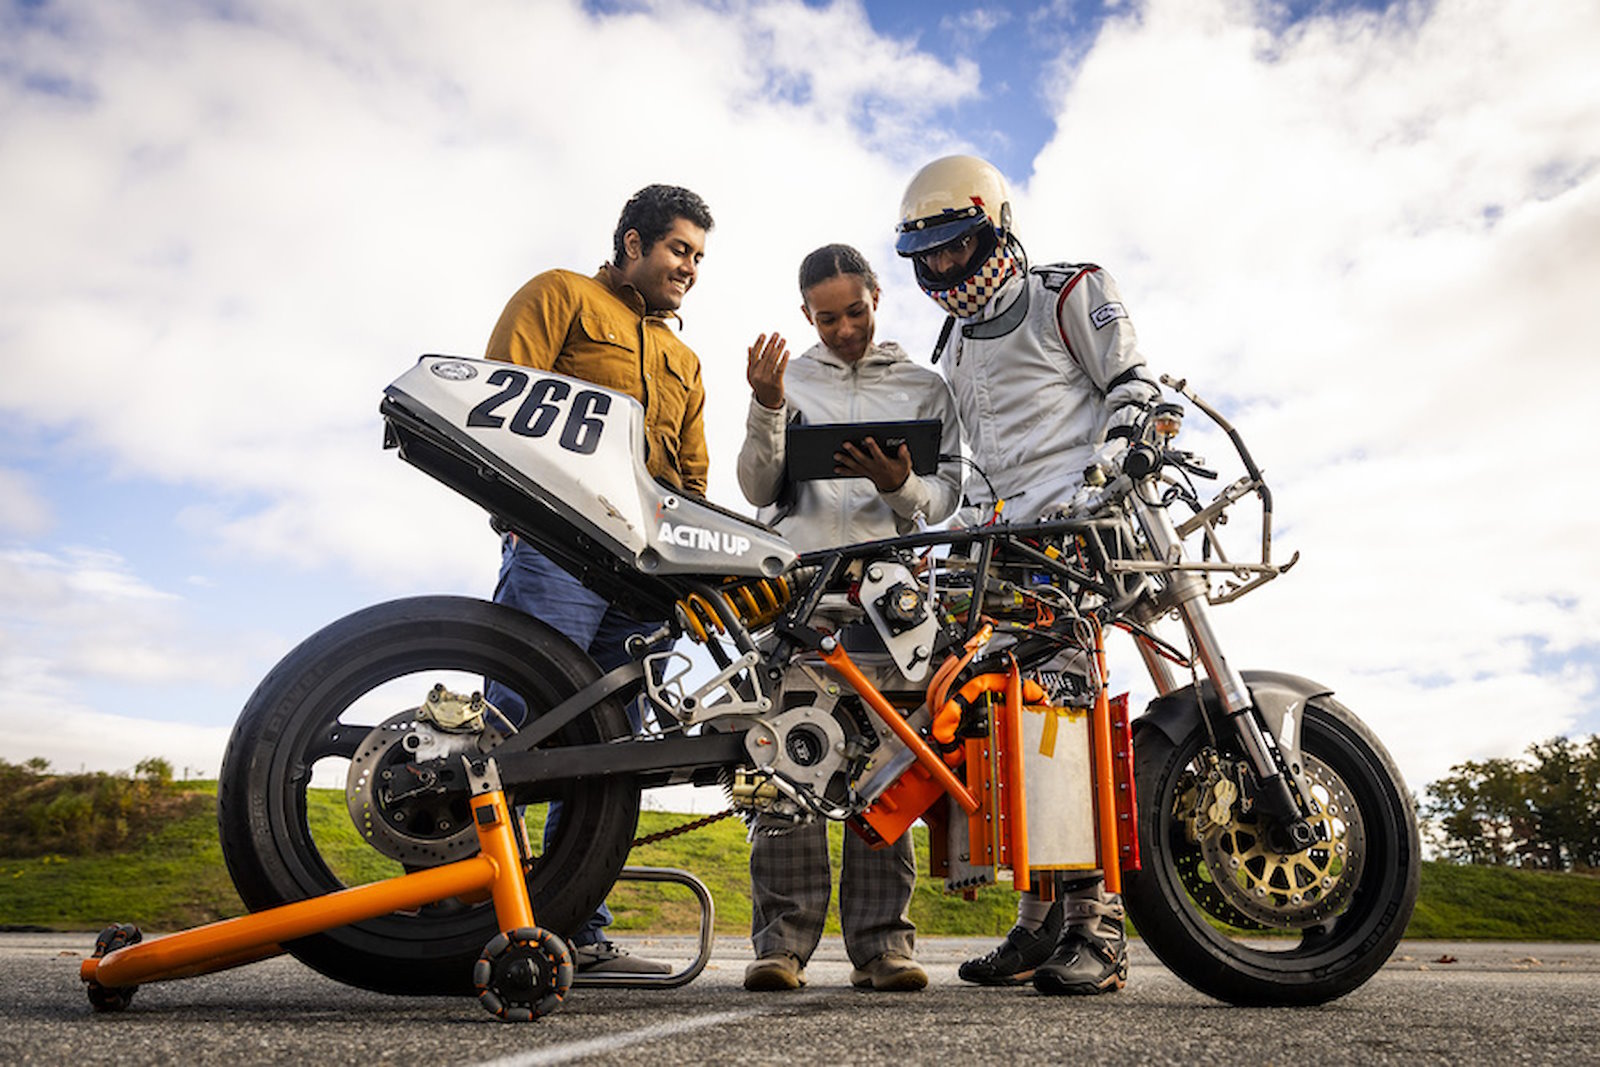 Cette moto a été converti à l’hydrogène grâce à l’ajout d’un moteur électrique et d’une pile à combustible. © MIT